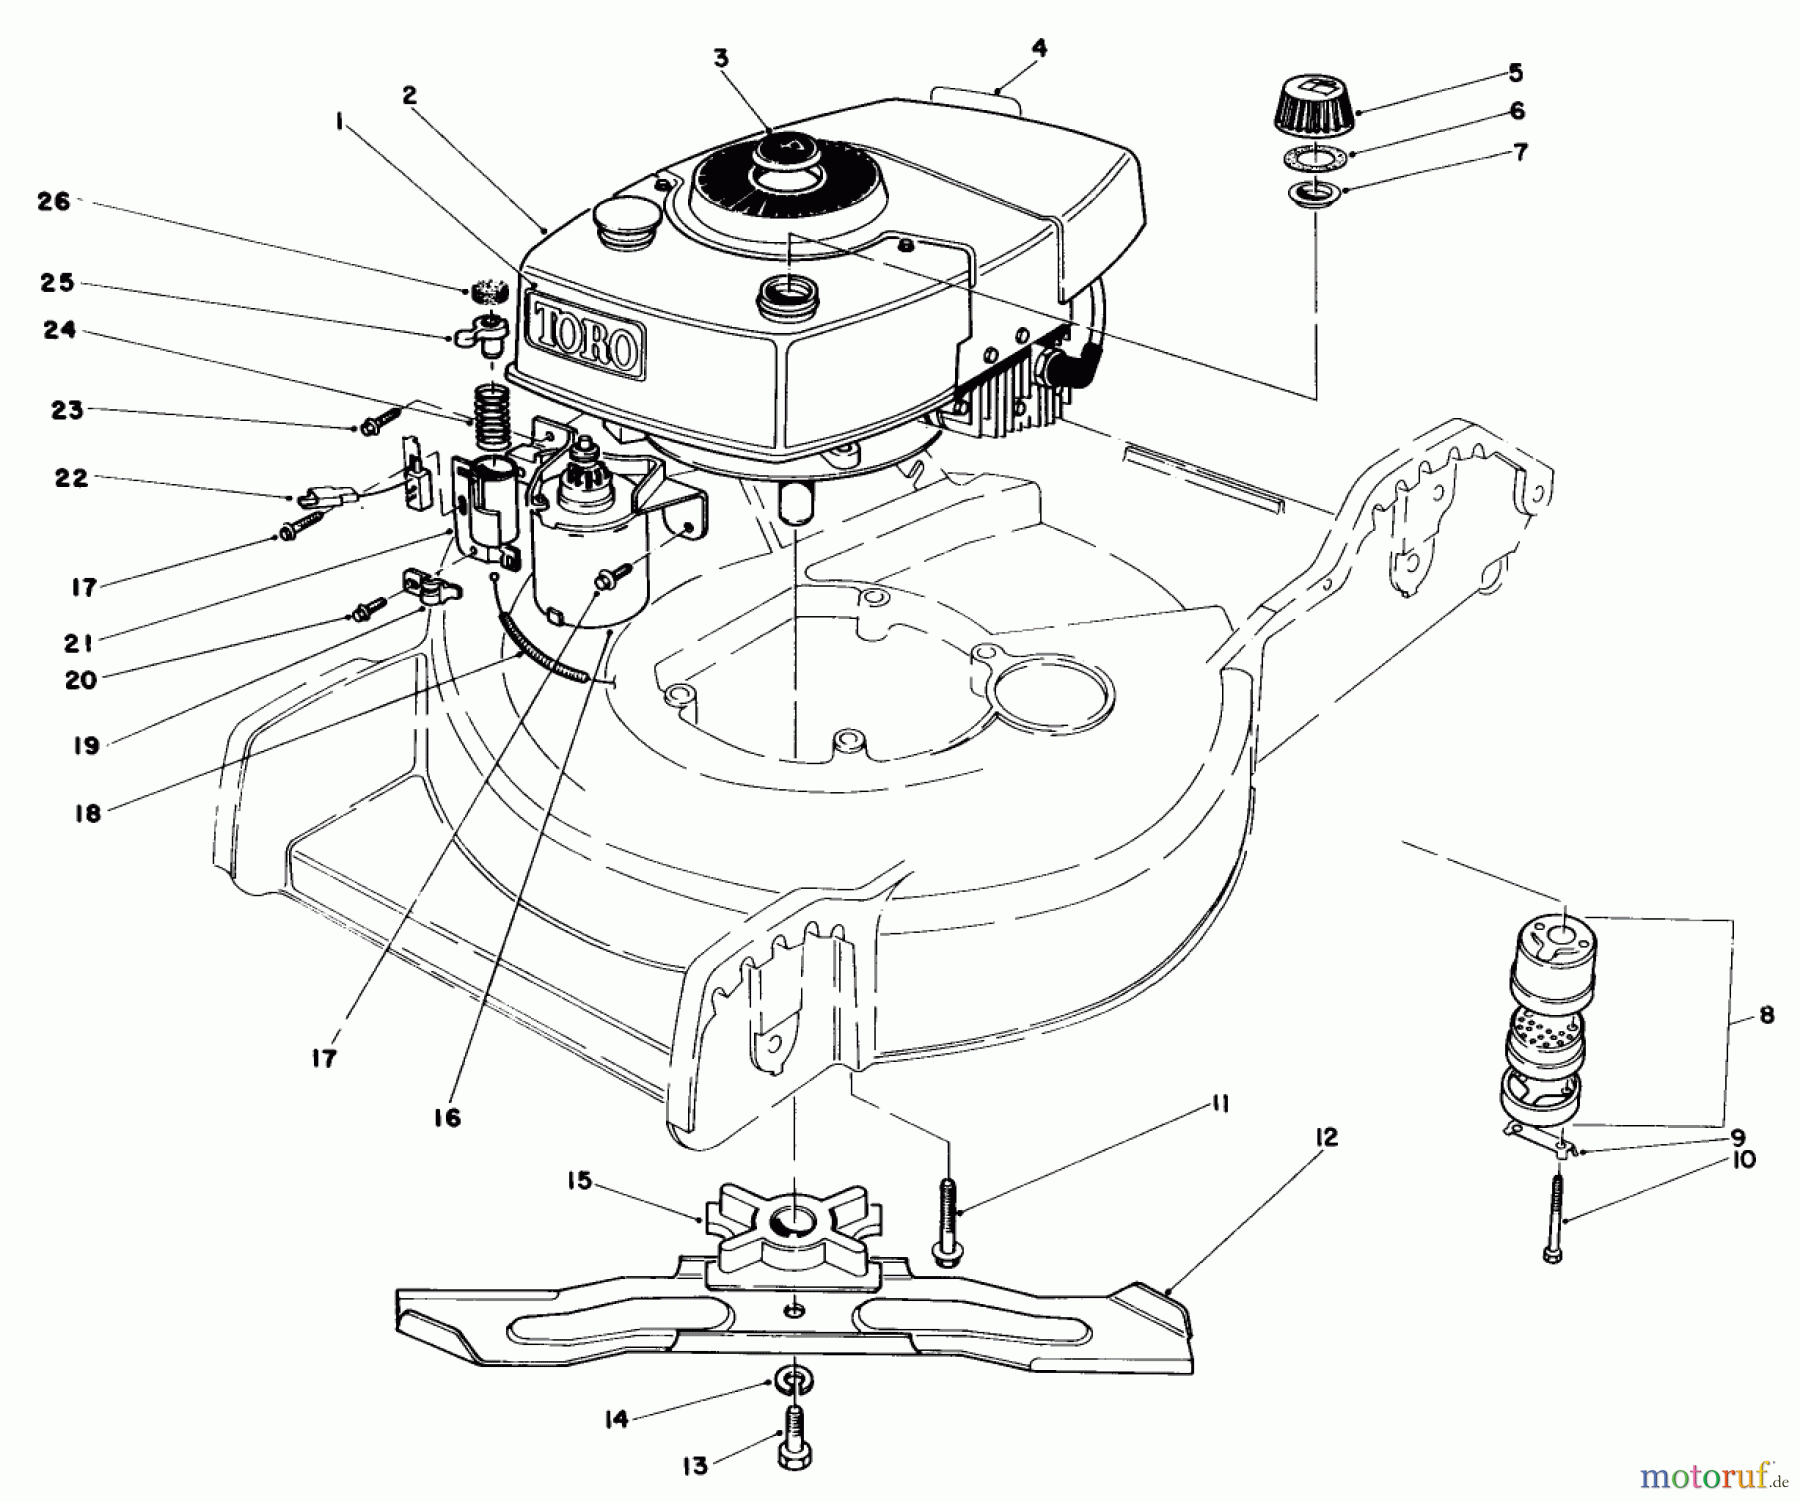  Toro Neu Mowers, Walk-Behind Seite 1 20574 - Toro Lawnmower, 1985 (5000001-5999999) ENGINE ASSEMBLY